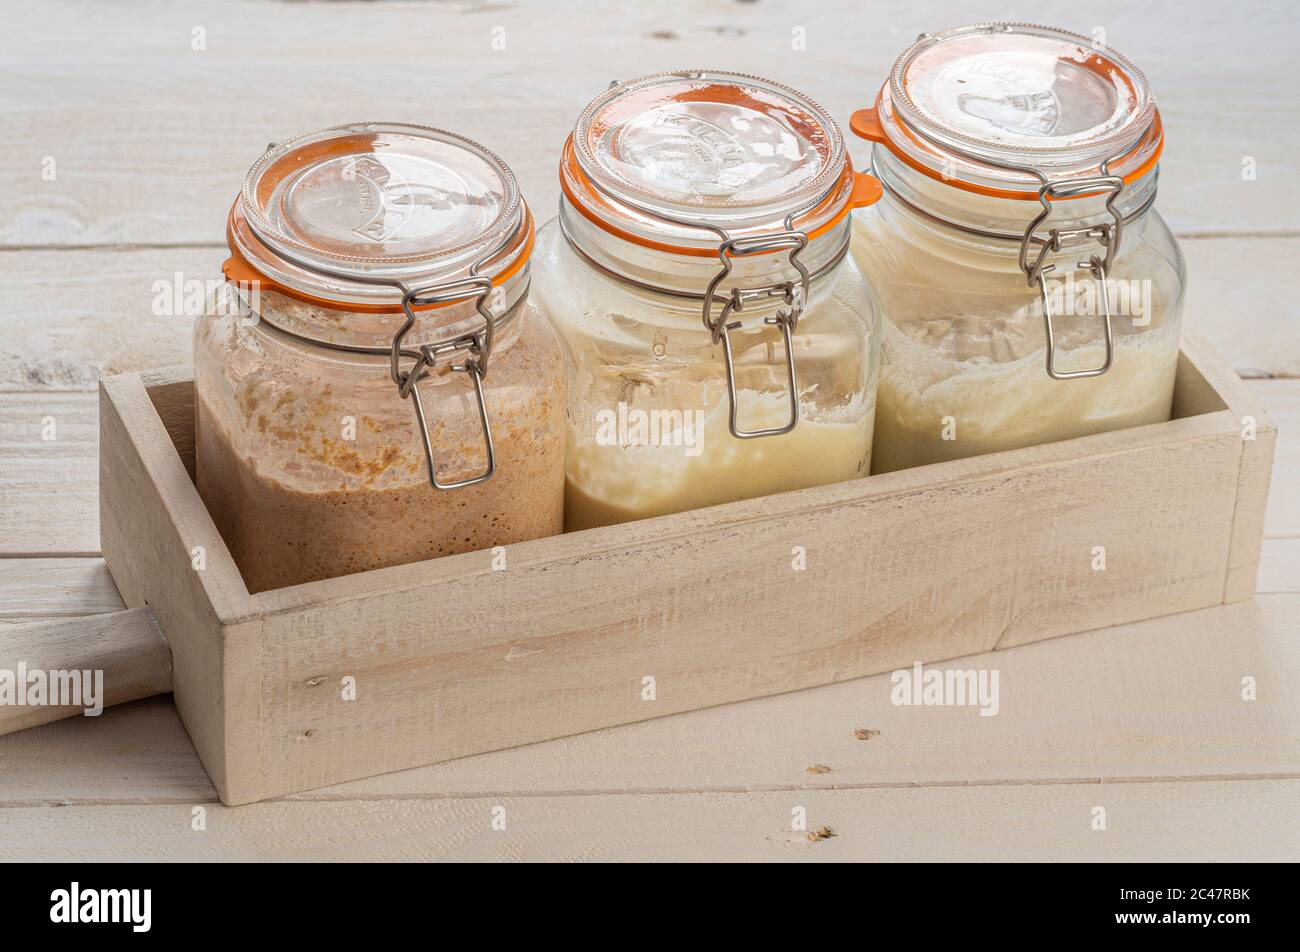 Tres jarras cuadradas de cristal Kilner que contienen entrantes de pan de masa fermentada hechos con centeno oscuro, harina blanca fuerte y sin gluten. Foto de stock